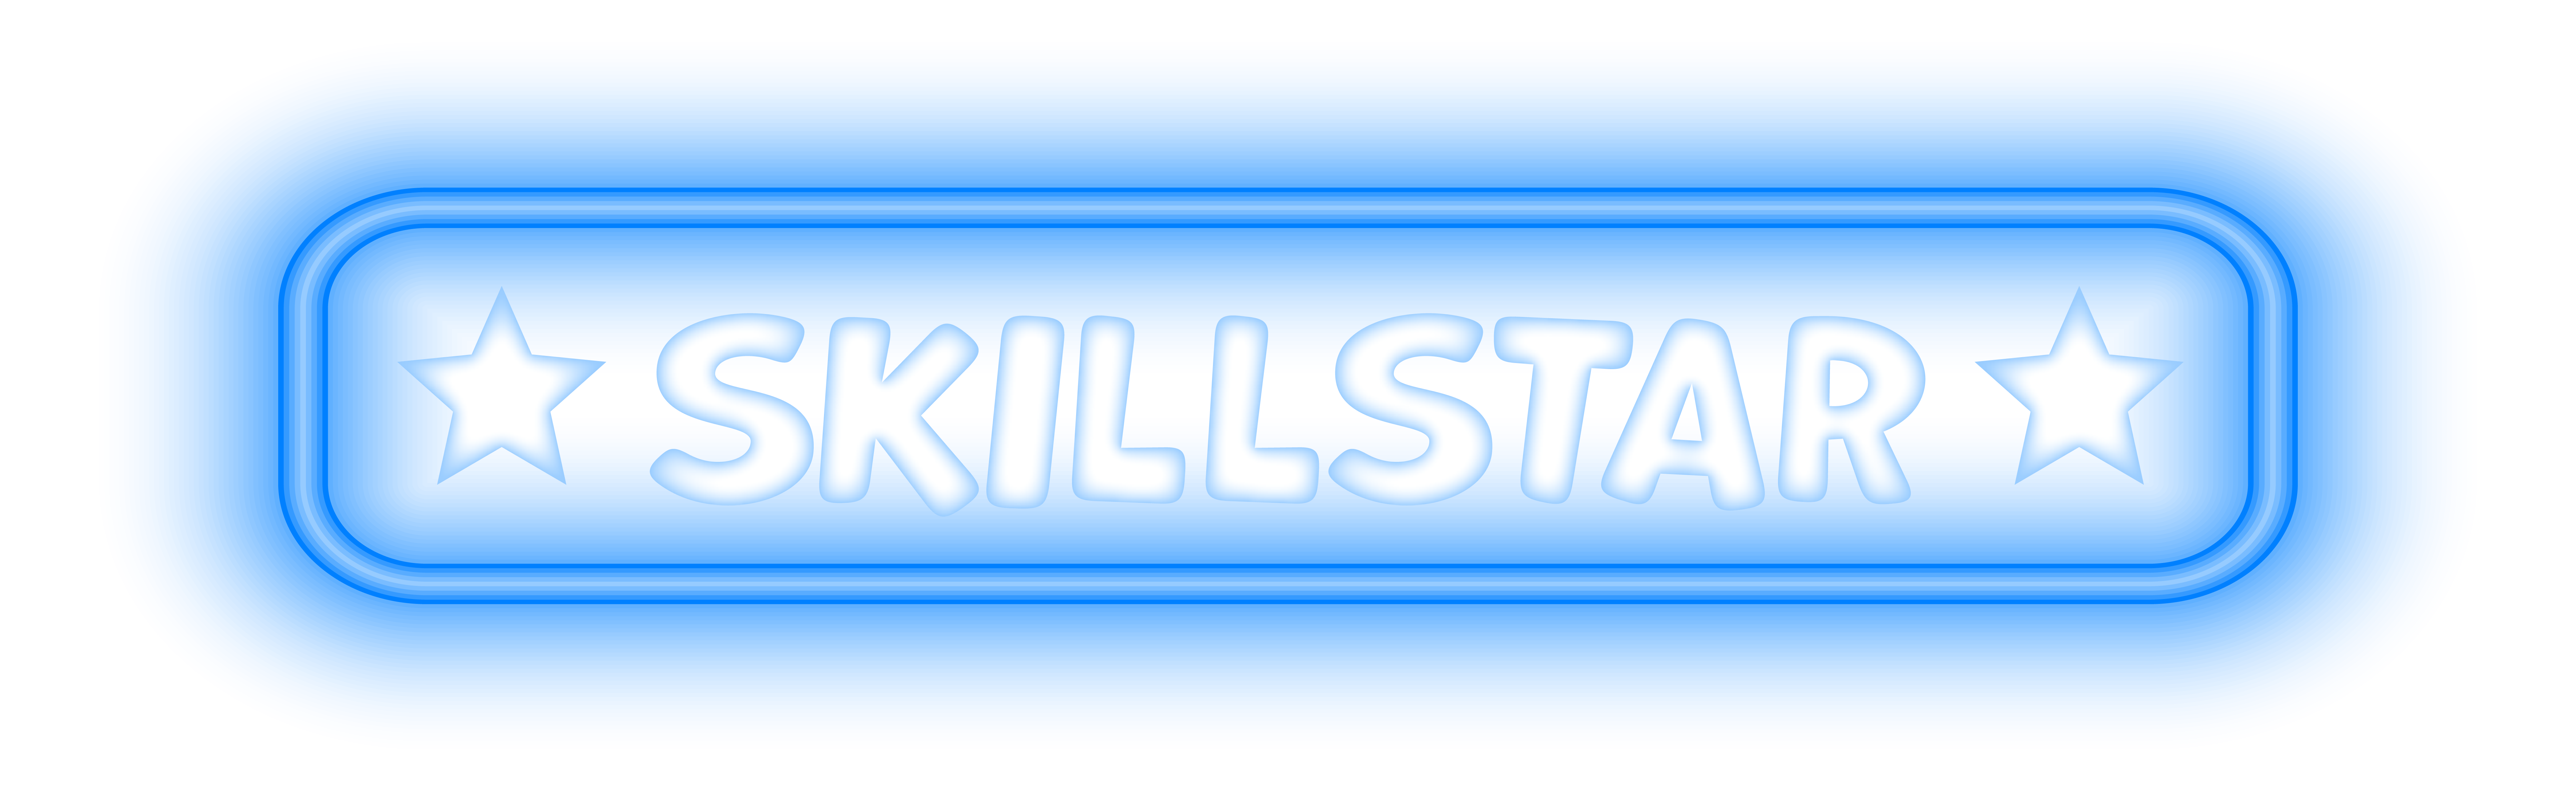 skillstar